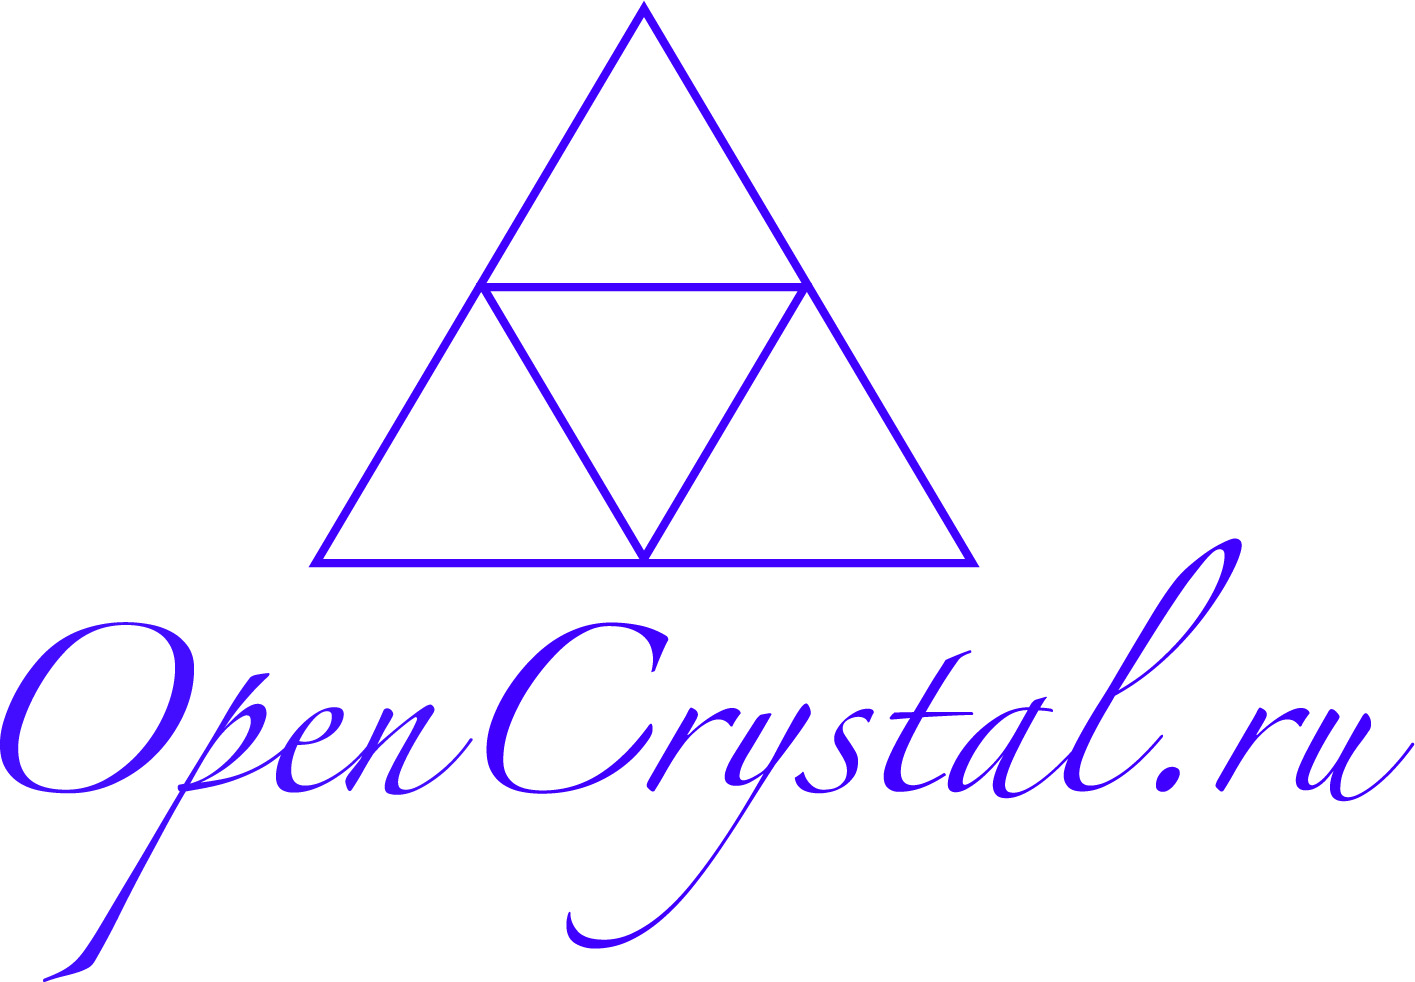 OpenCrystal